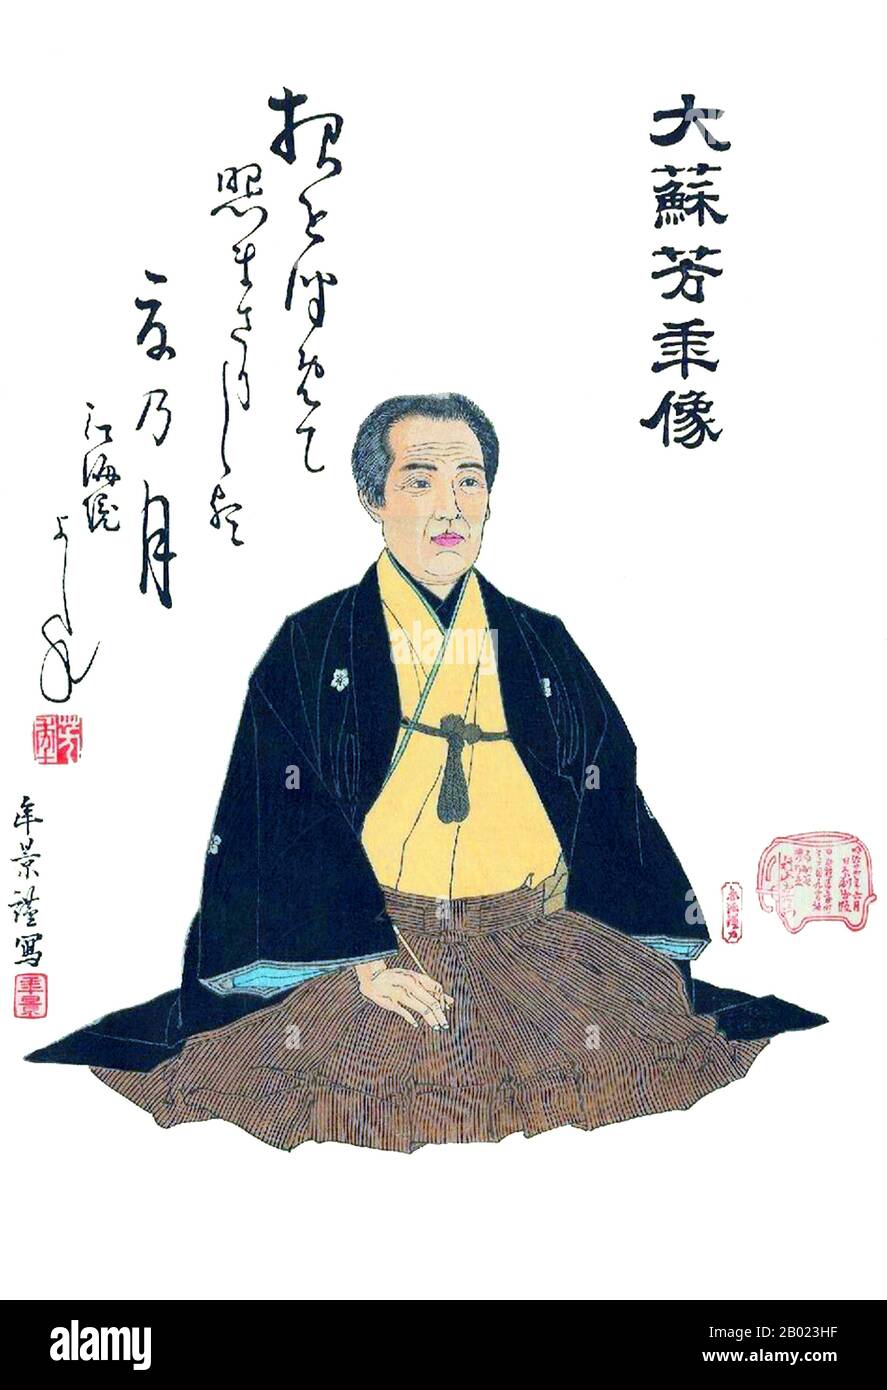 Tsukioka Yoshitoshi (30 avril 1839 – 9 juin 1892) (japonais : 月岡 芳年; également nommé Tiso Yoshitoshi 大蘇 芳年) était un artiste japonais et un maître d'impression de boisés Ukiyo-e. Il est largement reconnu comme le dernier grand maître d'Ukiyo-e, un type d'impression japonaise de blocs de bois. Il est en outre considéré comme l'un des plus grands innovateurs de la forme. Sa carrière a duré deux périodes – les dernières années de la période Edo Japon, et les premières années du Japon moderne après la restauration Meiji. Comme beaucoup de Japonais, Yoshitoshi s'intéressait à de nouvelles choses du reste du monde, mais avec le temps, il s'inquiétait de plus en plus Banque D'Images